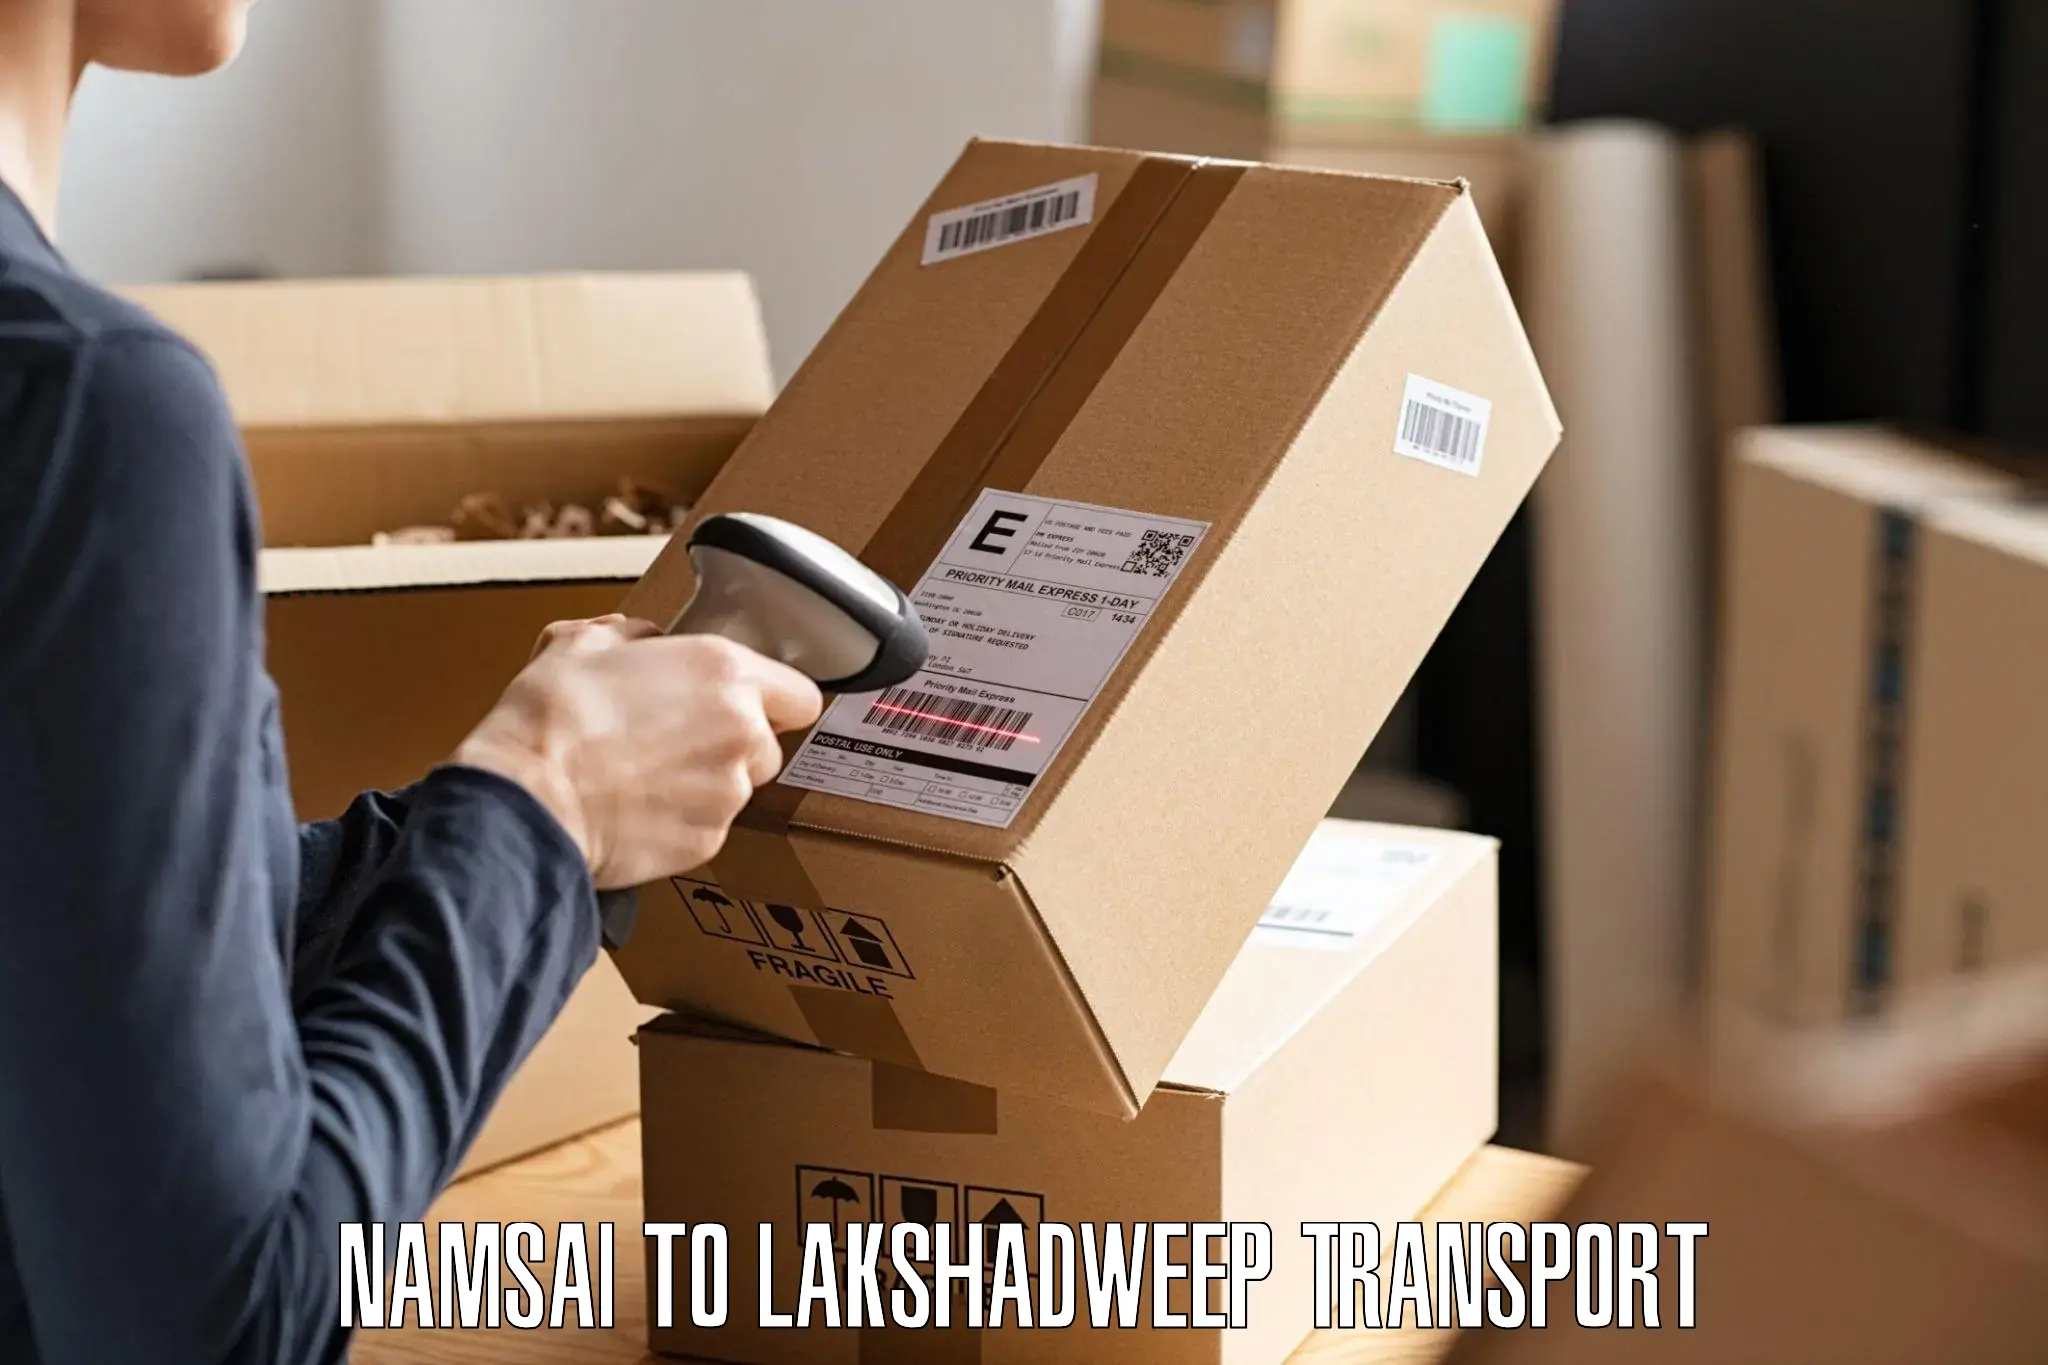 Transportation services Namsai to Lakshadweep